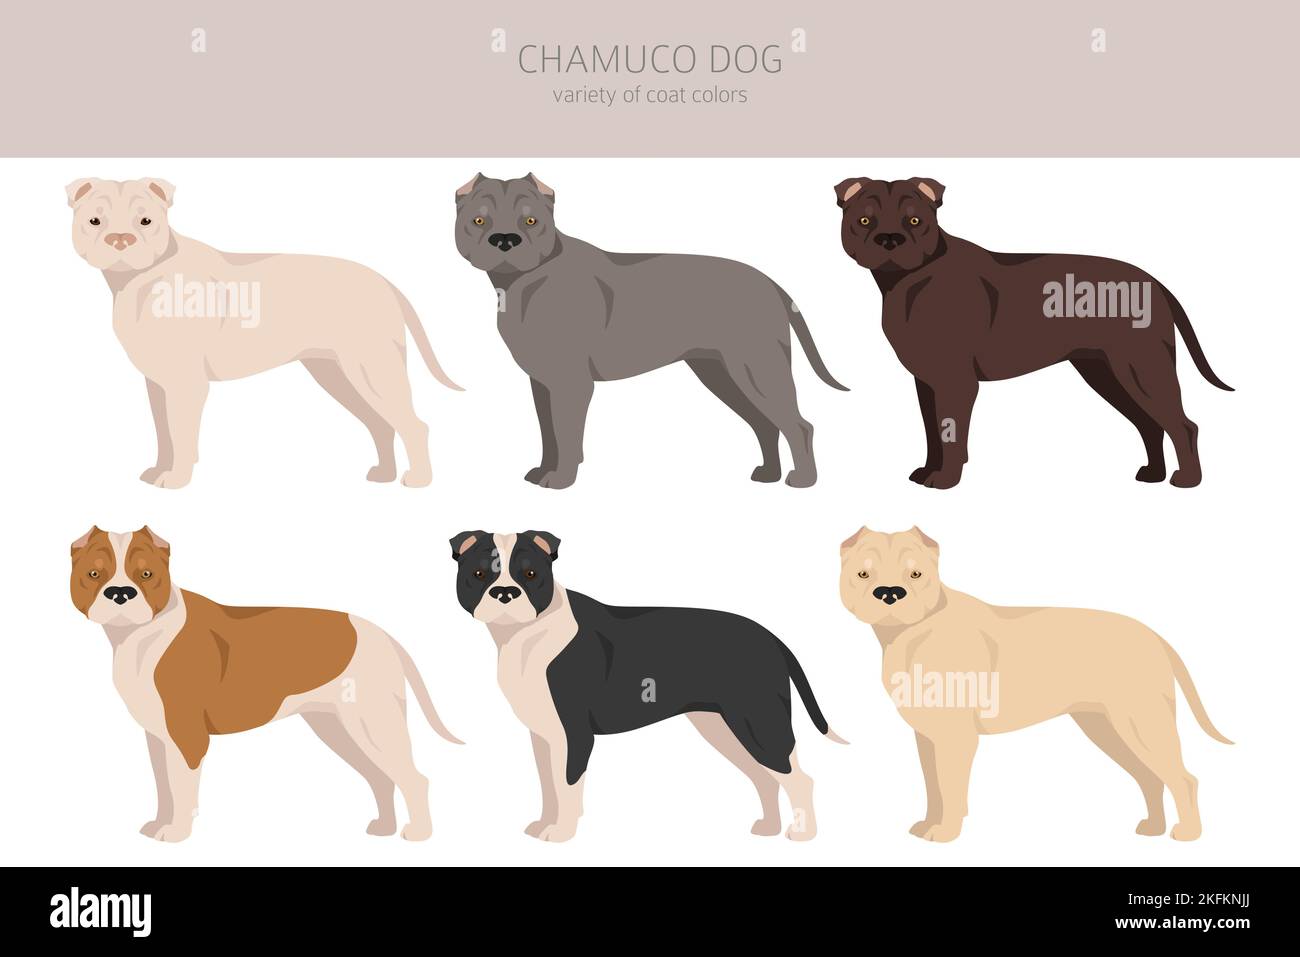 Griffe de chien Chamuco. Différentes poses, ensemble de couleurs de pelage. Illustration vectorielle Illustration de Vecteur